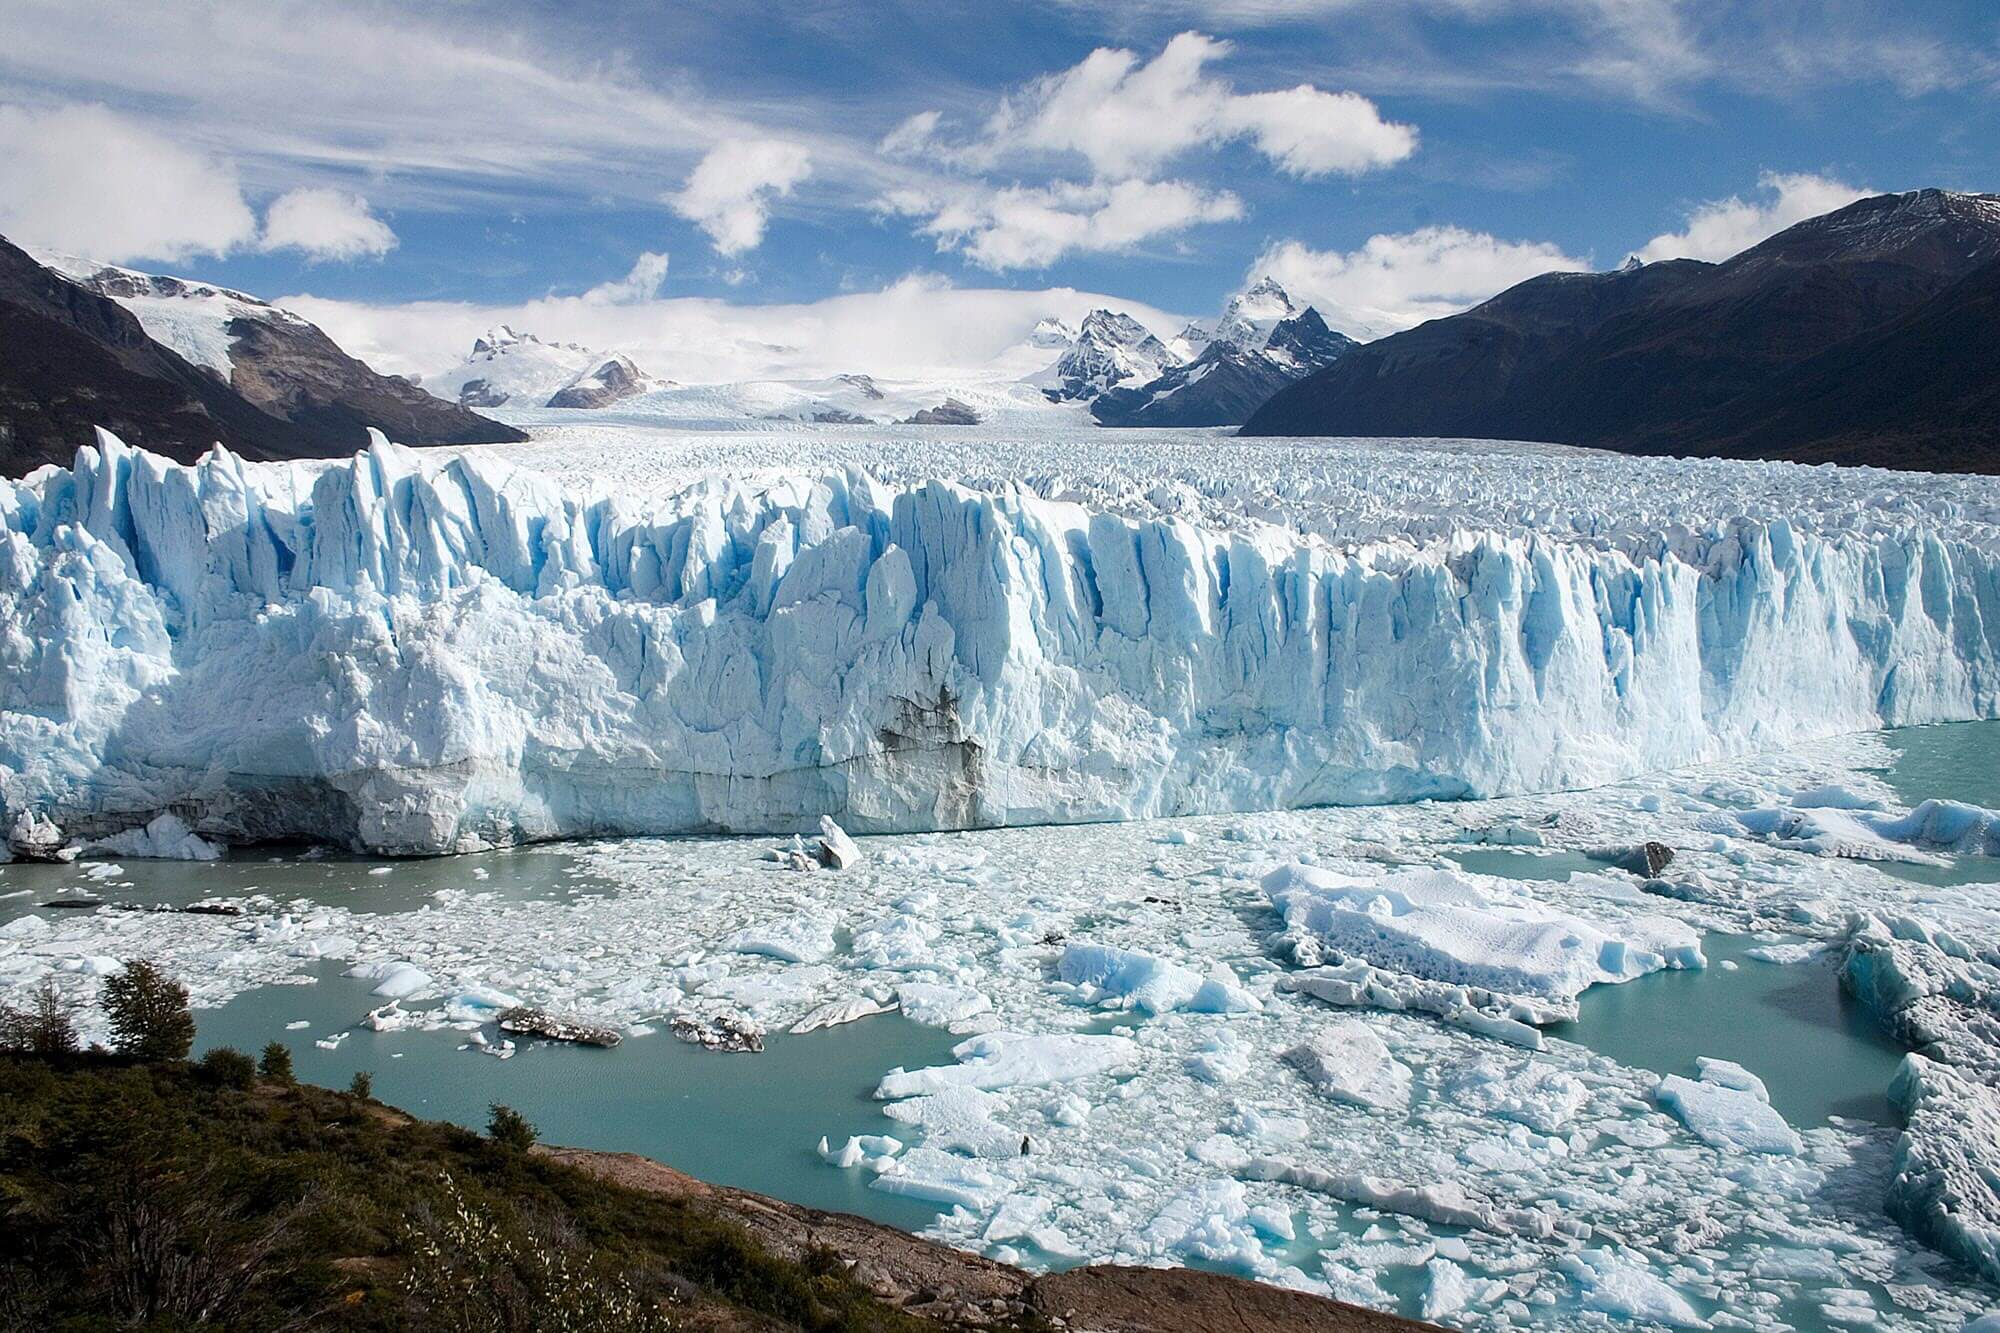 The jaw-dropping Perito Moreno Glacier